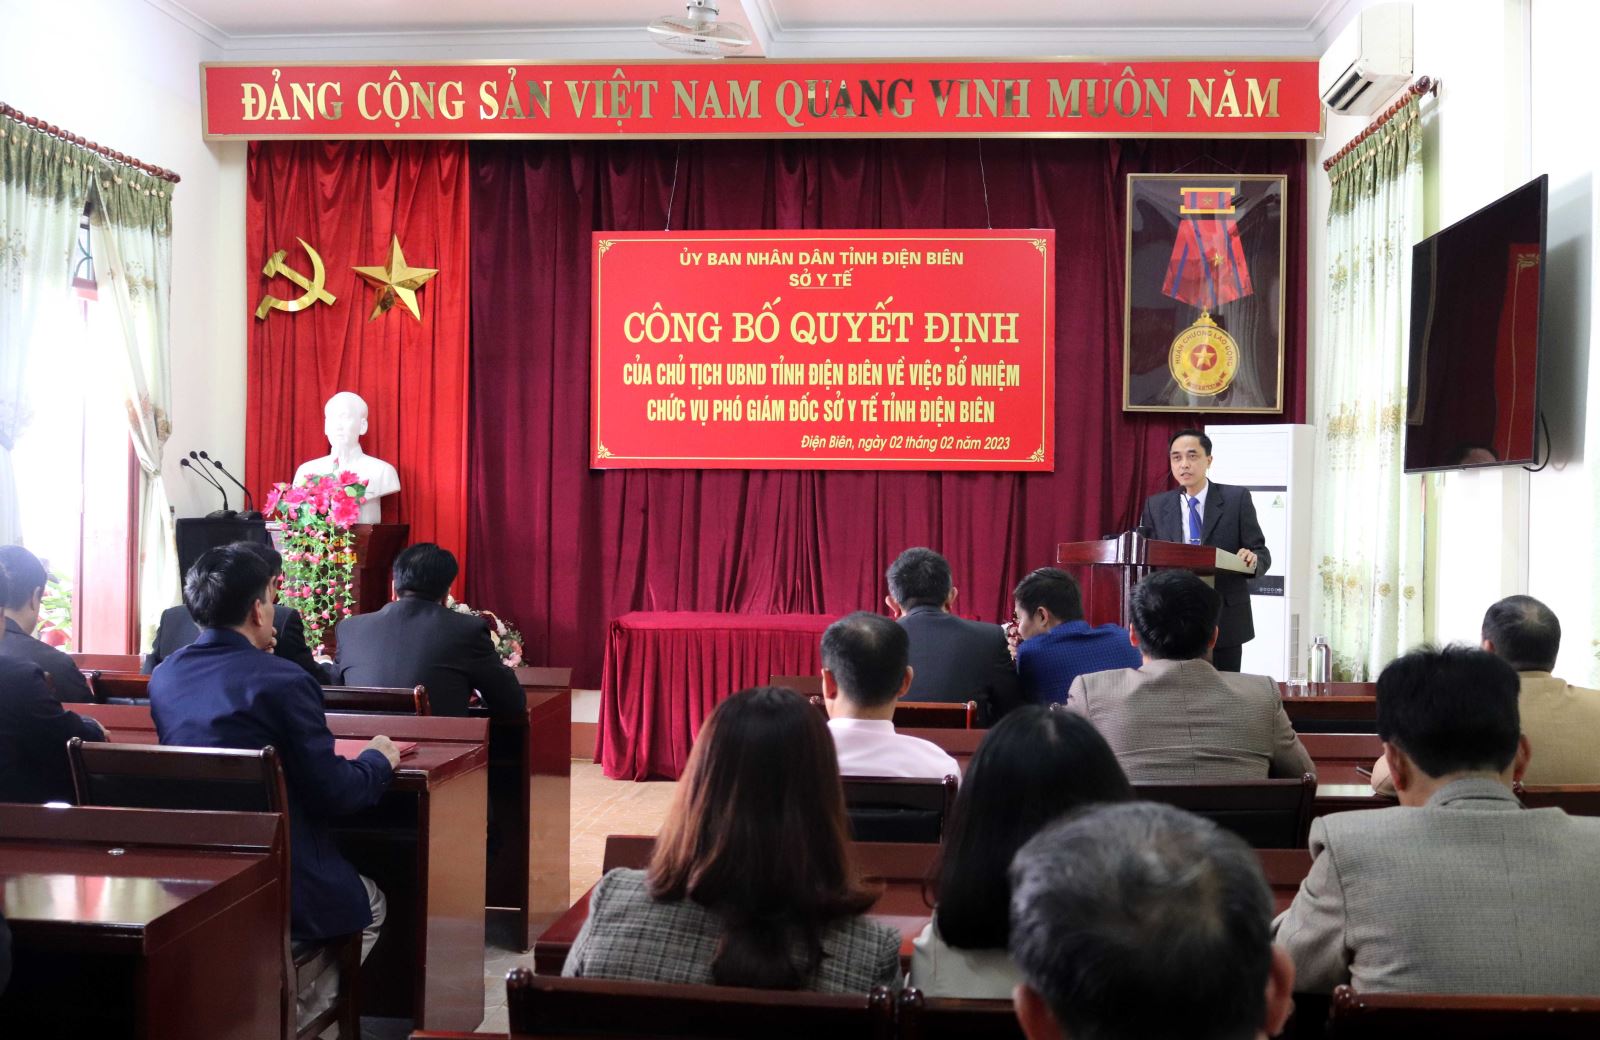 Đồng chí Phạm Văn Mẫn, Phó Giám đốc Sở Y tế phát biểu nhận nhiệm vụ tại buổi Lễ